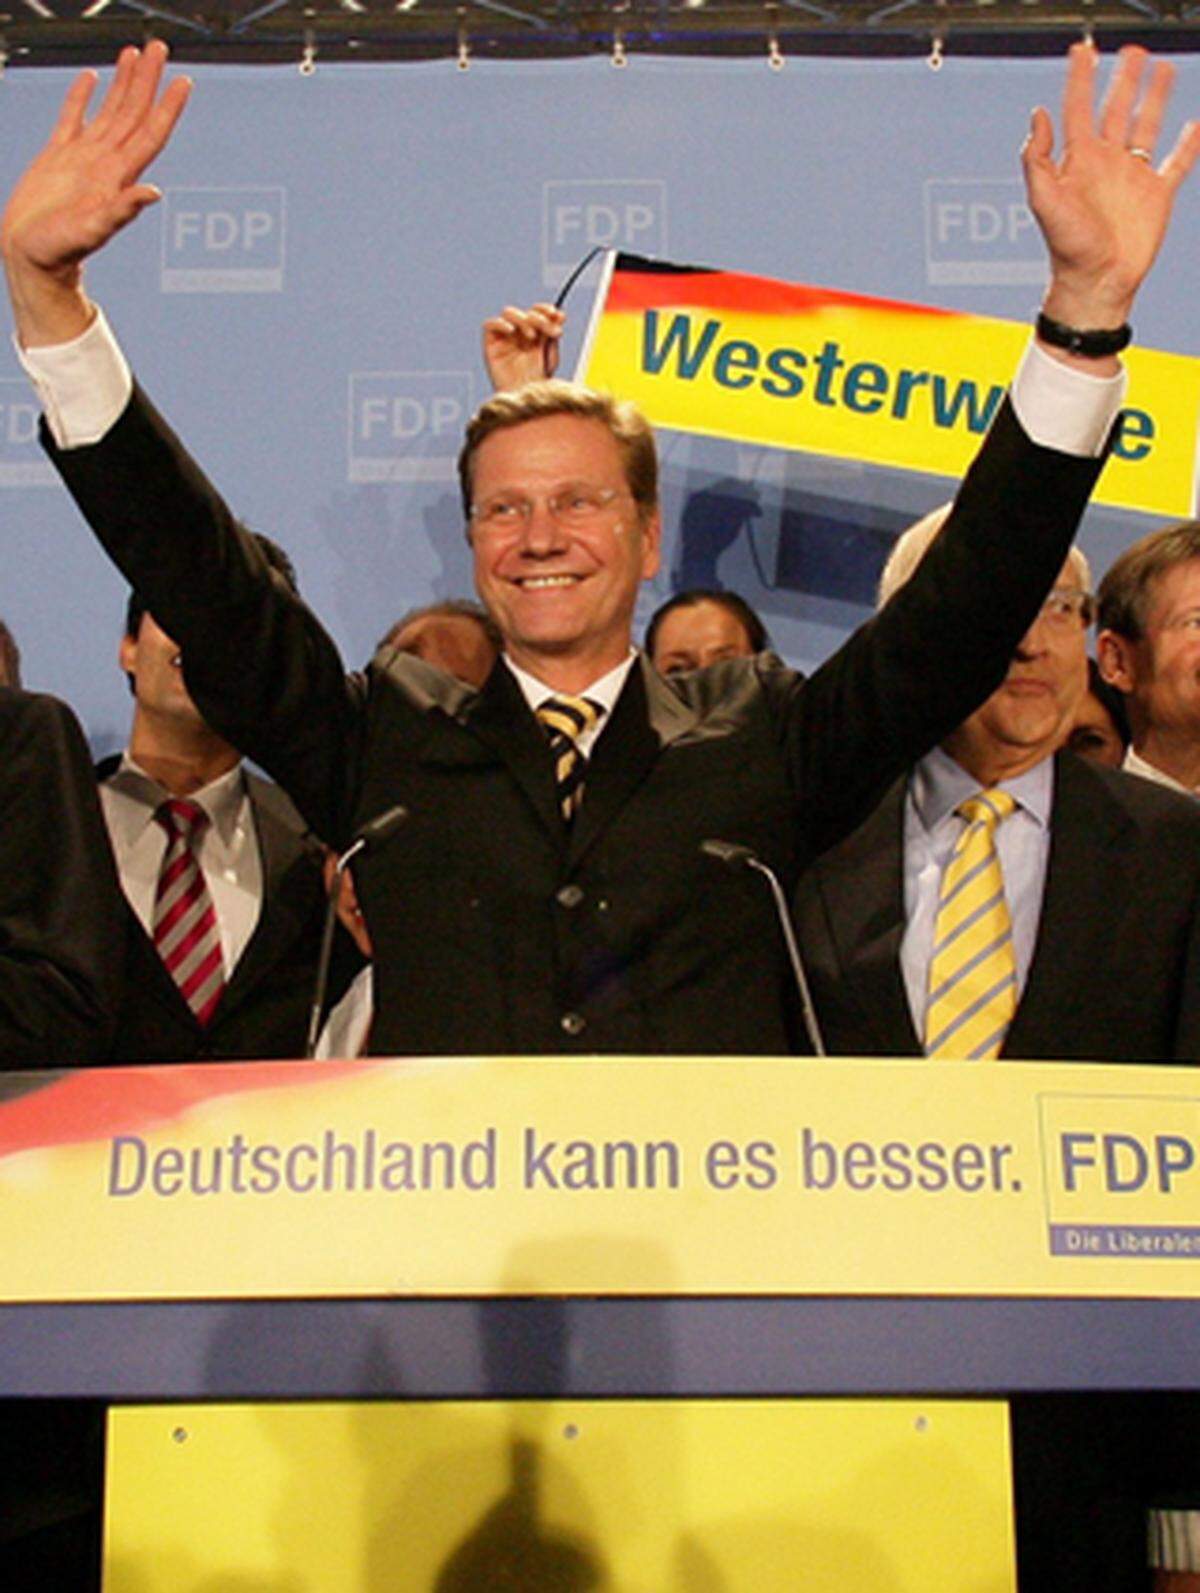 "Wir wollen jetzt Deutschland mitregieren!",sagt FDP-Chef Guido Westerwelle. Notwendig seien eine faires Steuersystem, bessere Bildungschancen und die Respektierung der Bürgerrechte.